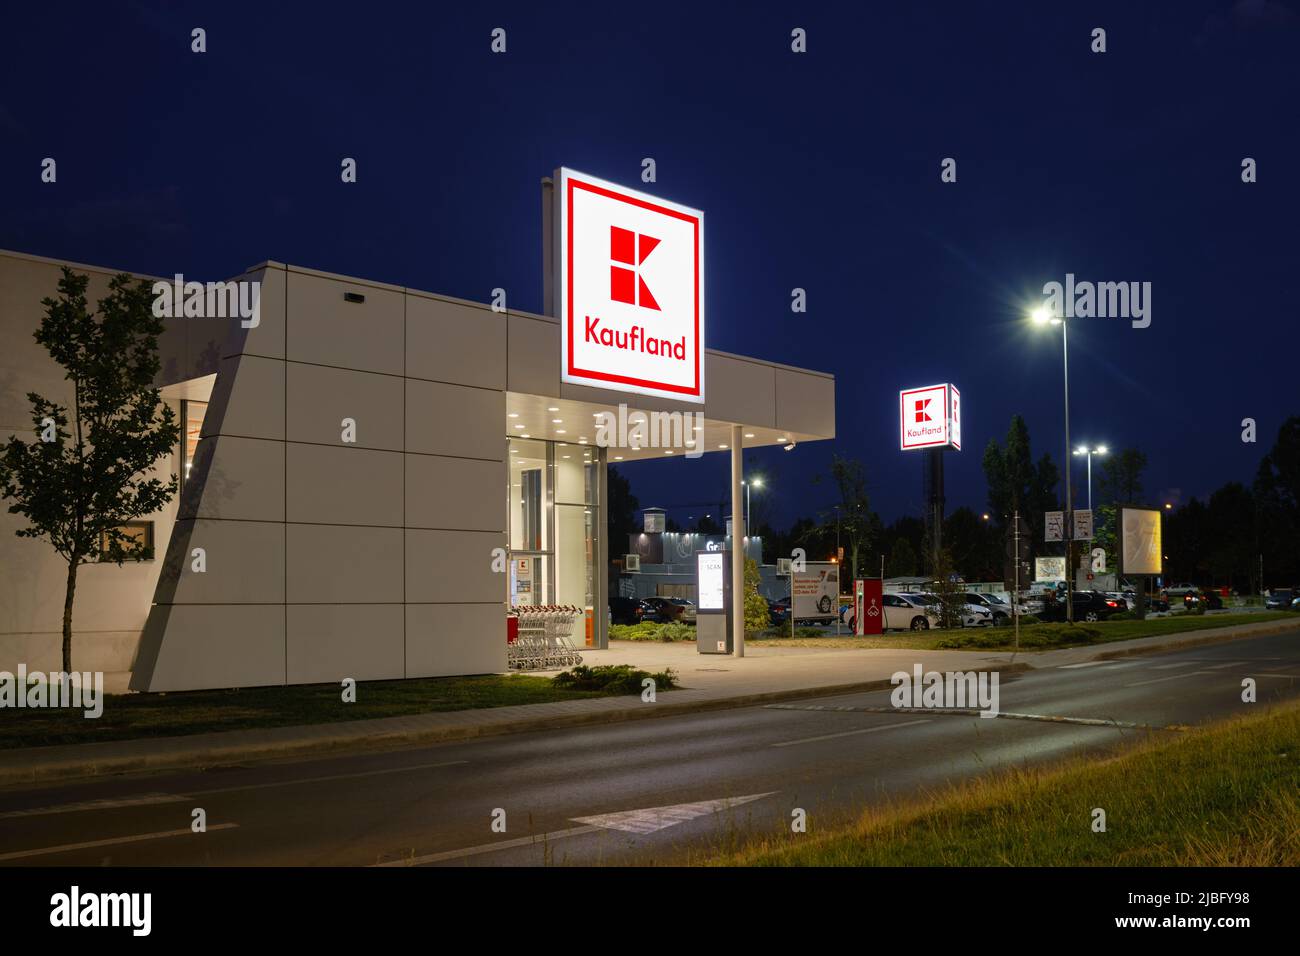 Cartello con il logo Kaufland e moderno edificio di negozi, di notte, con auto di passaggio. Kaufland è una catena di ipermercati tedesca, facente parte del gruppo Schwarz. Buch Foto Stock